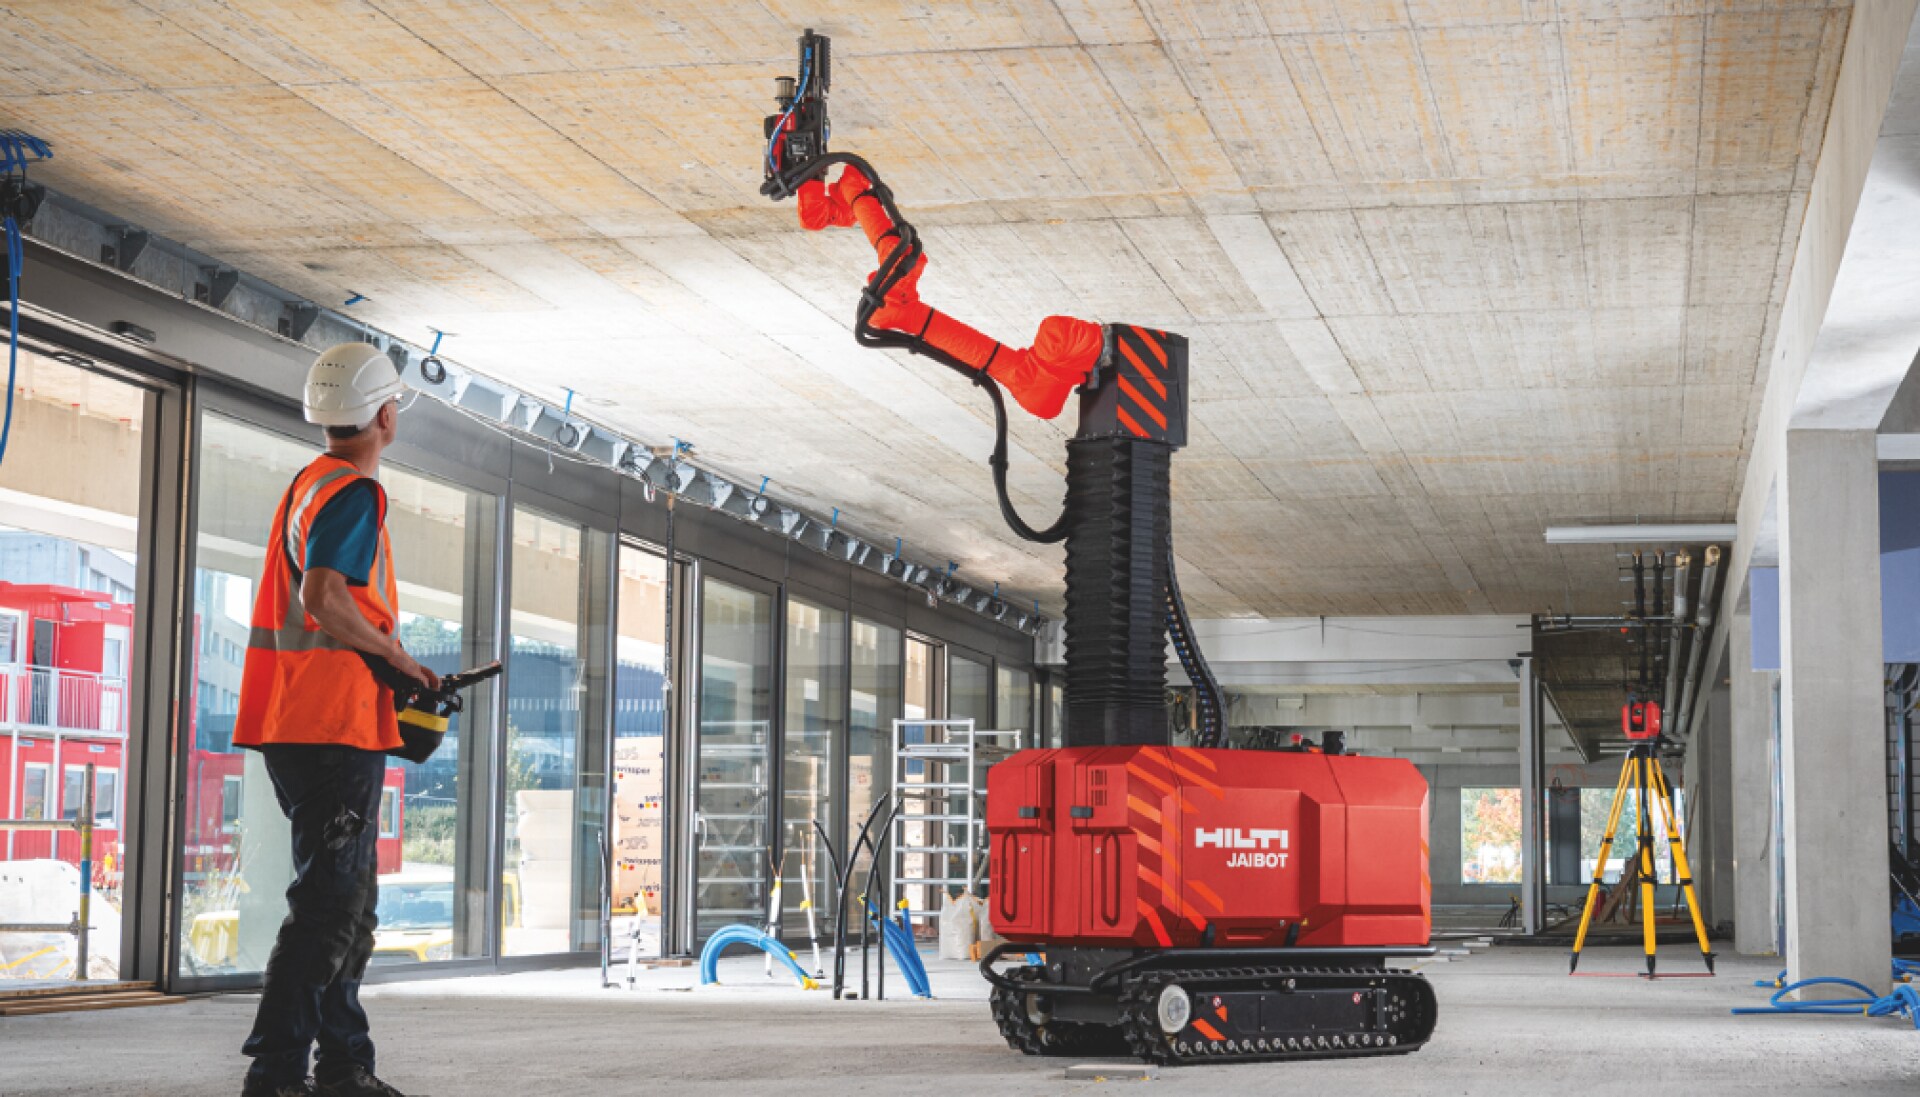 Bygningsarbejder betjener loftsborerobotten Jaibot på en byggeplads